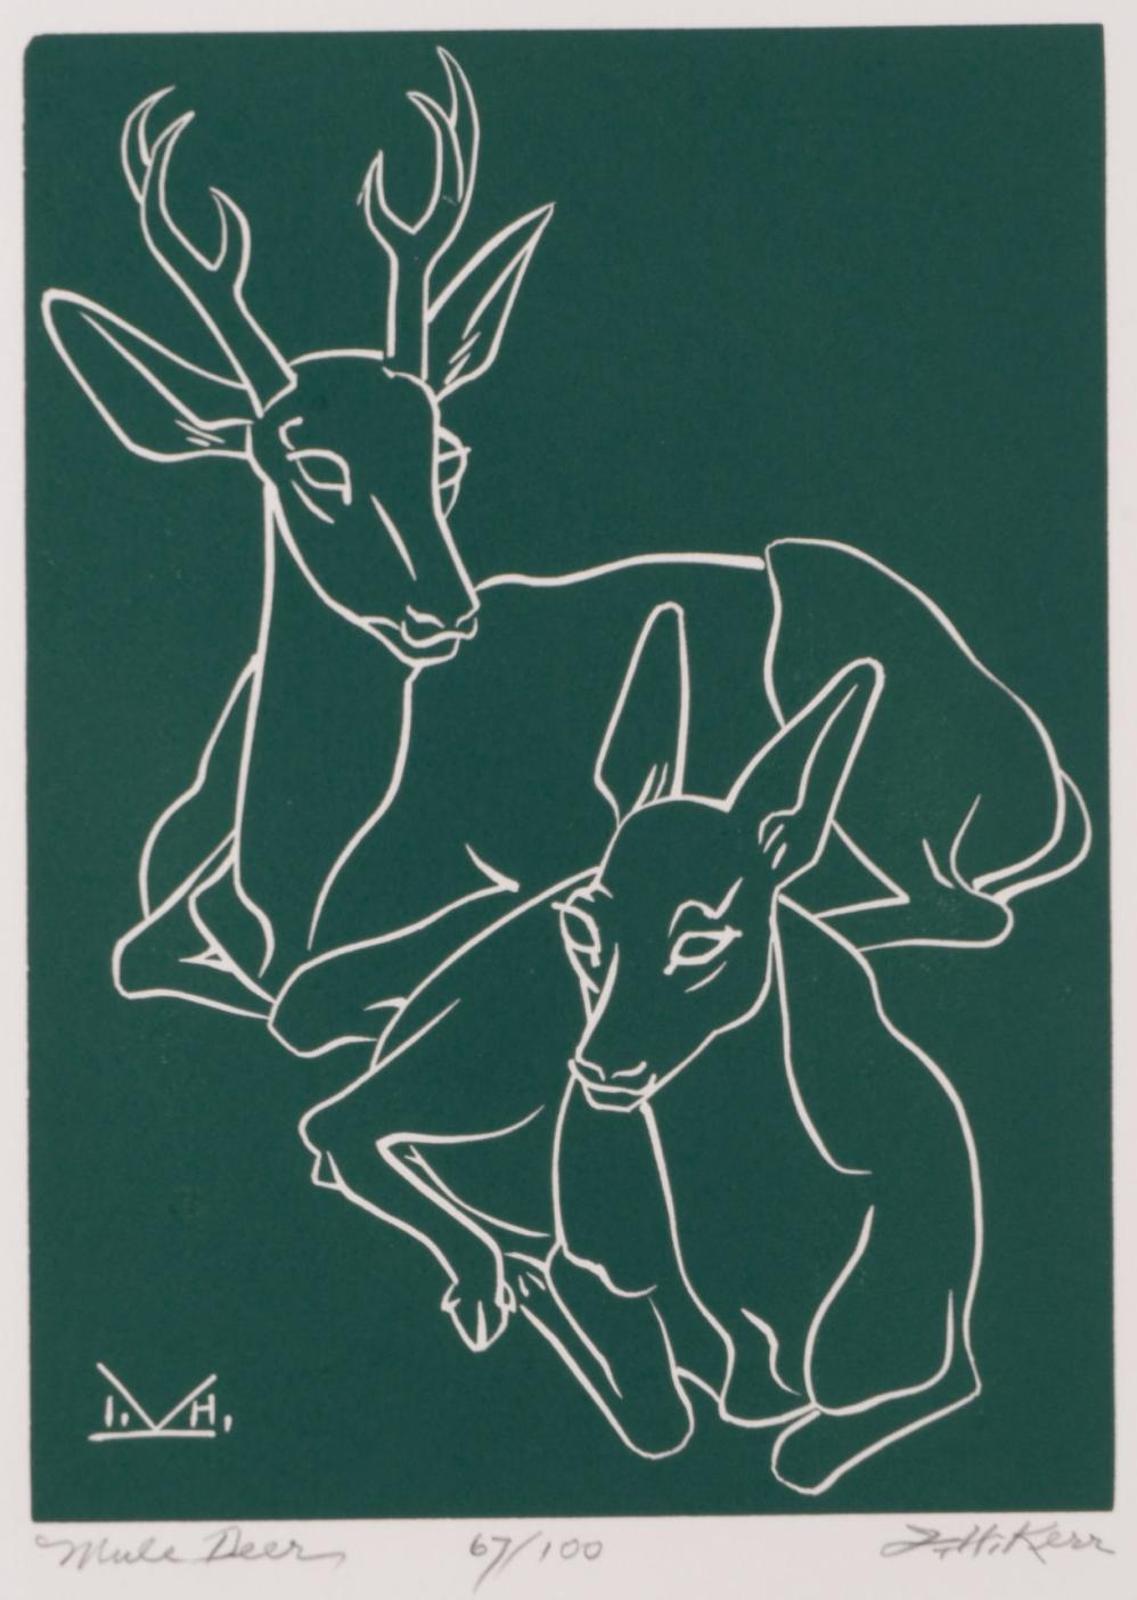 Illingworth Holey (Buck) Kerr (1905-1989) - Mule Deer